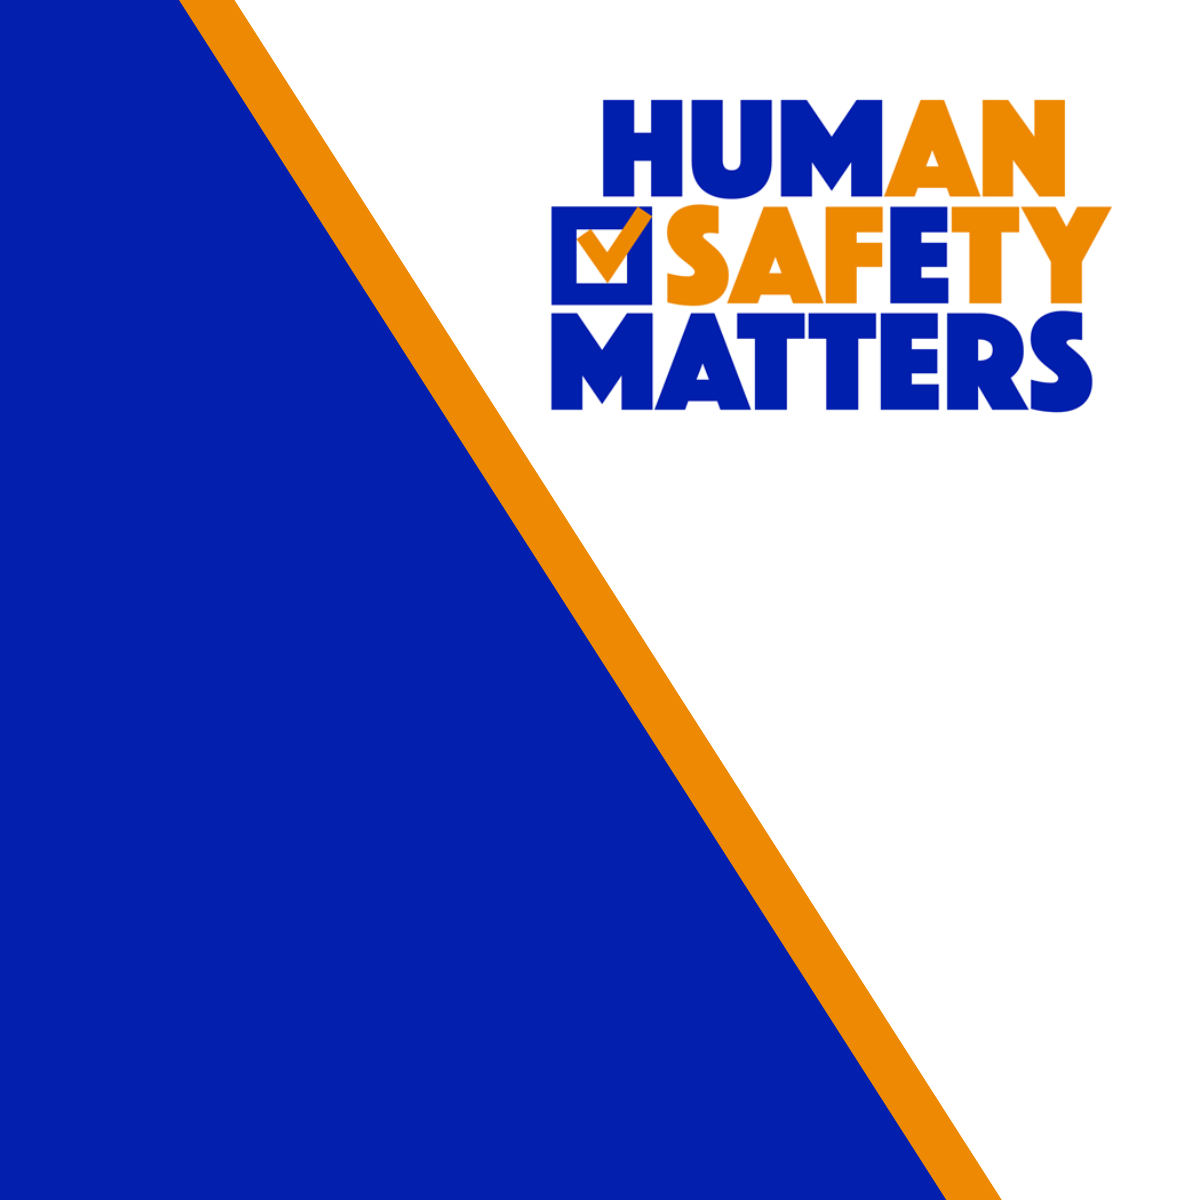 Human safety matters